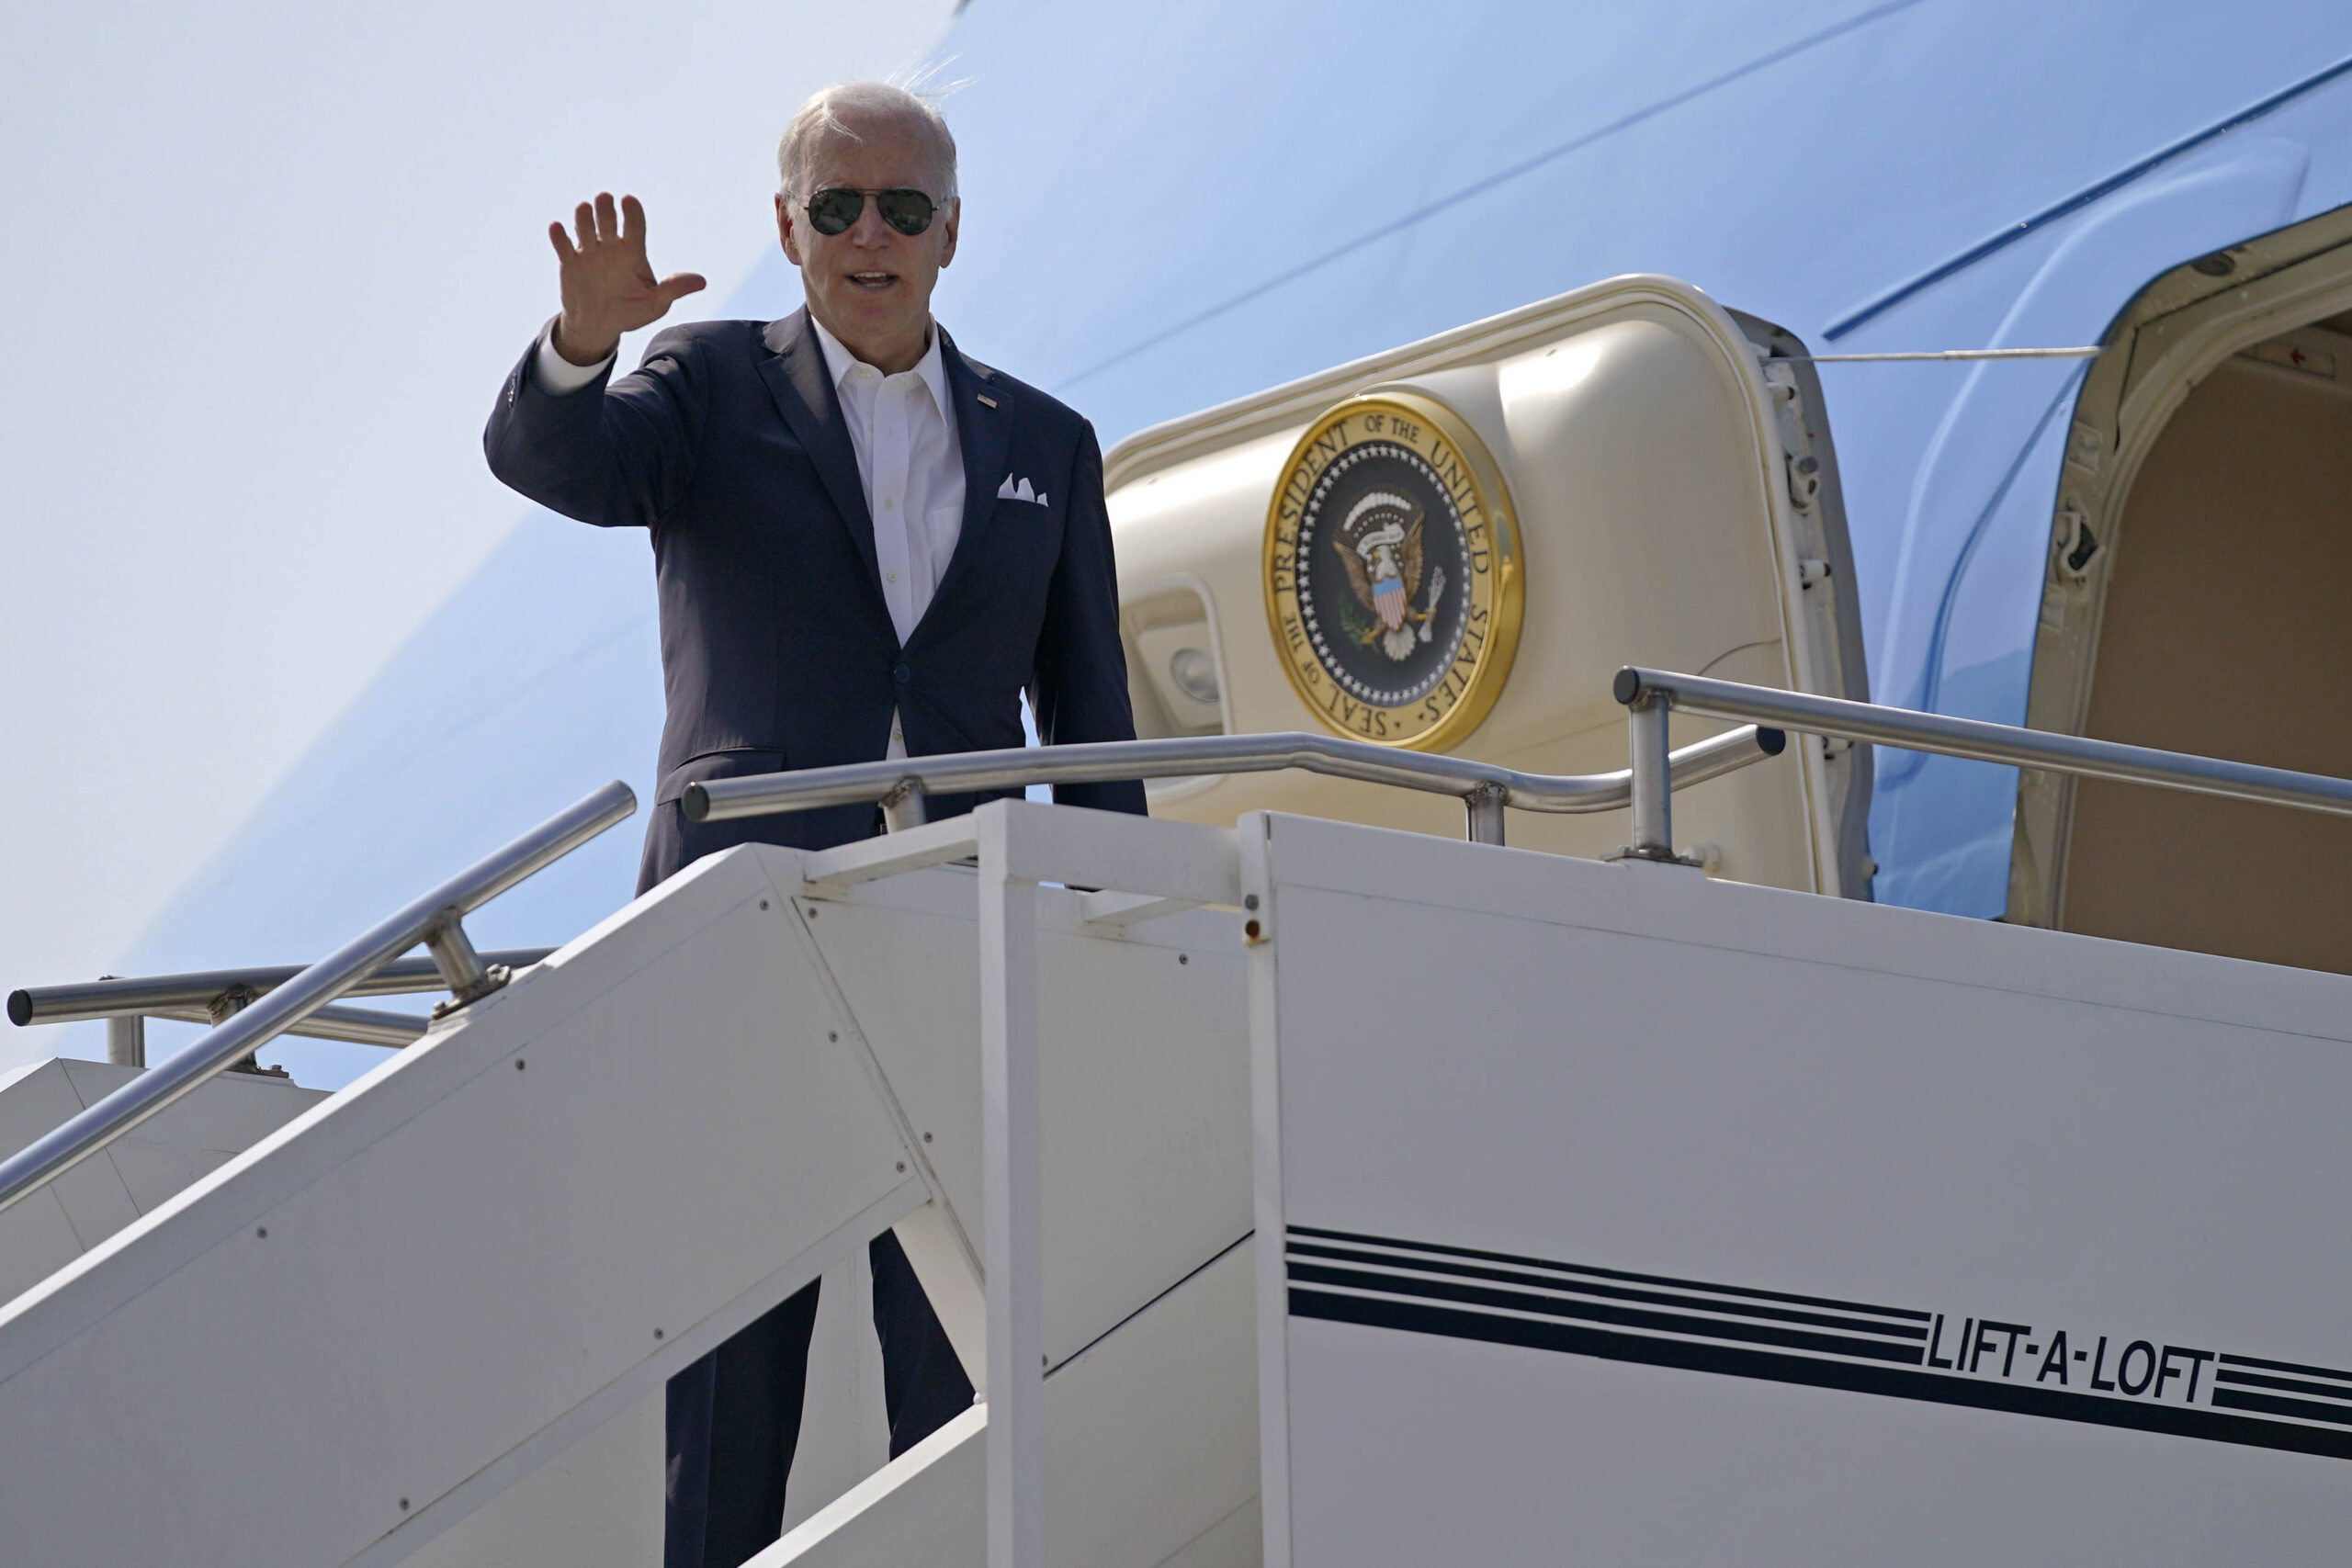 Il presidente USA Biden incontra in Giappone l’imperatore Naruhito – FOTOGALLERY